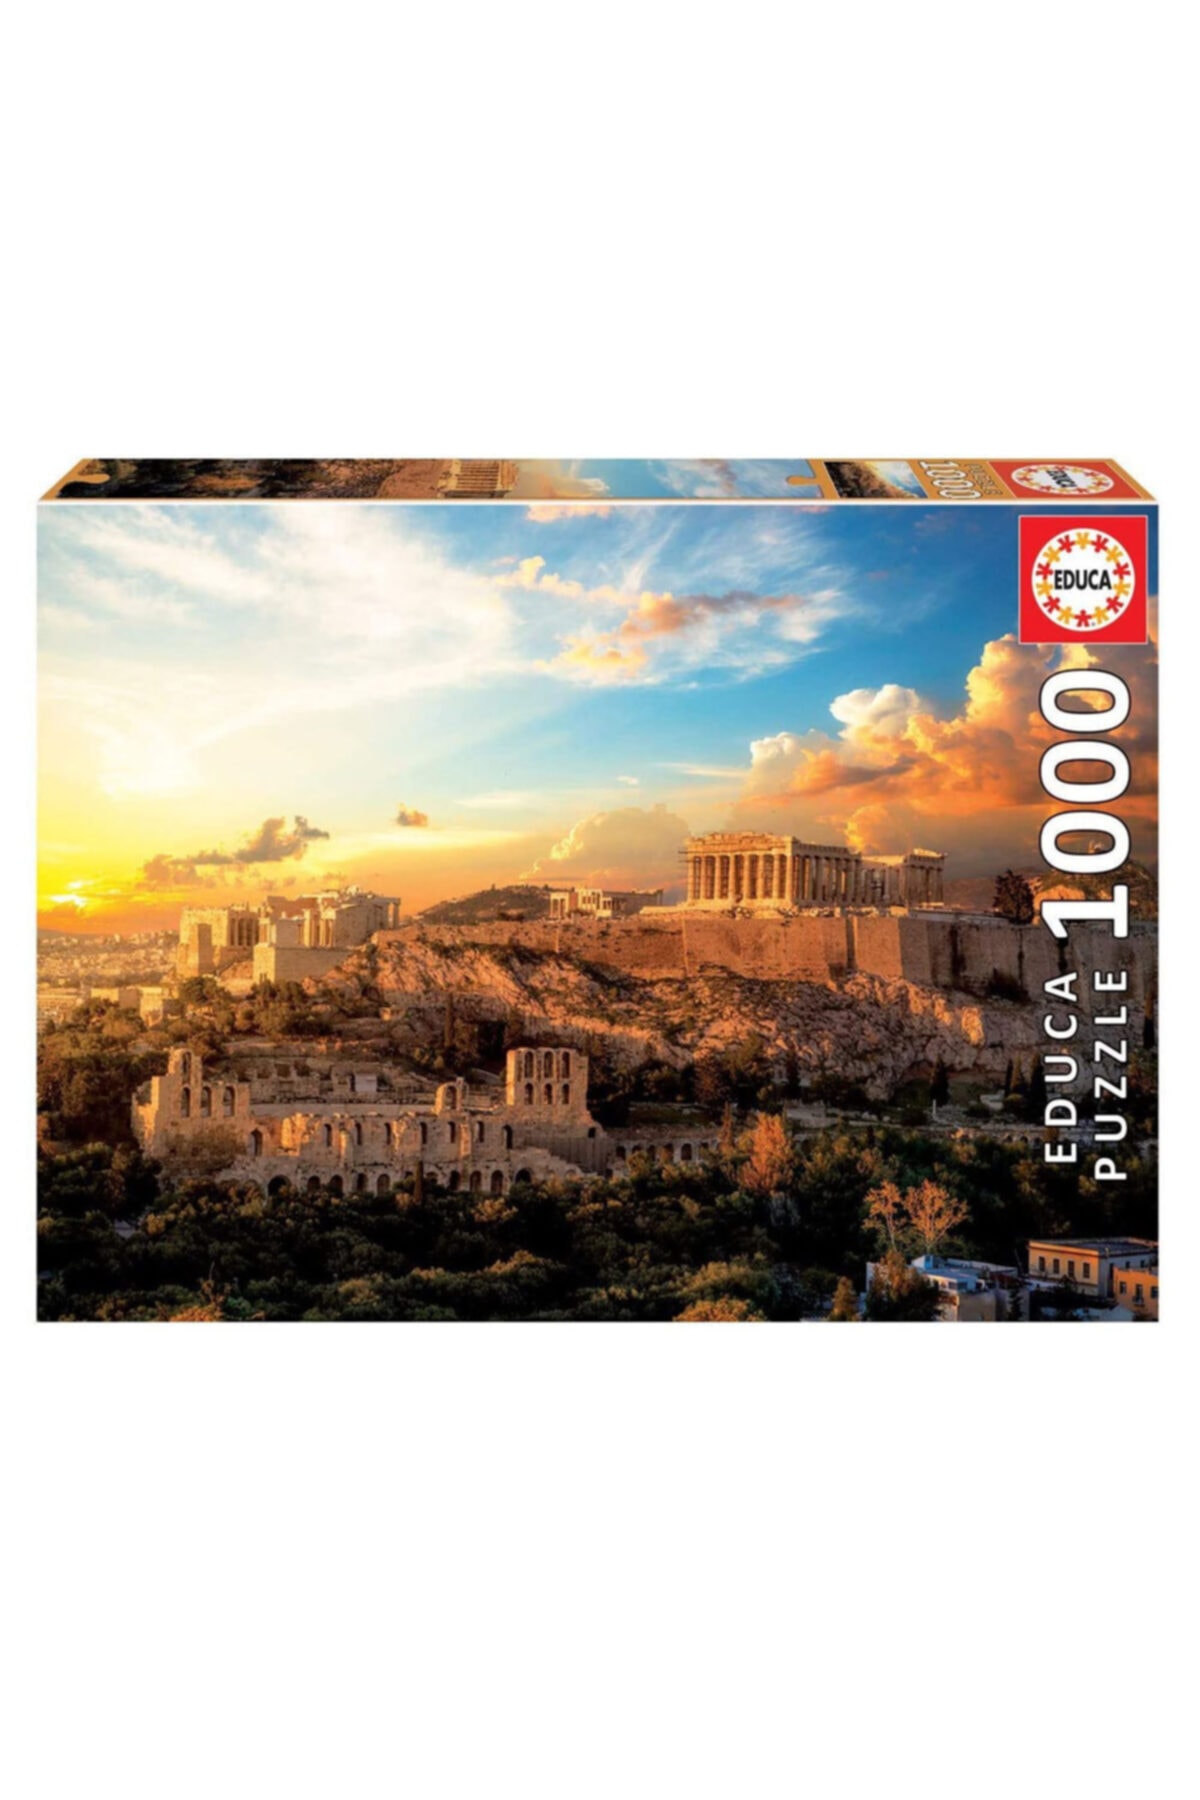 EDUCA Acropolis Of Athens 1000 Parça Puzzle